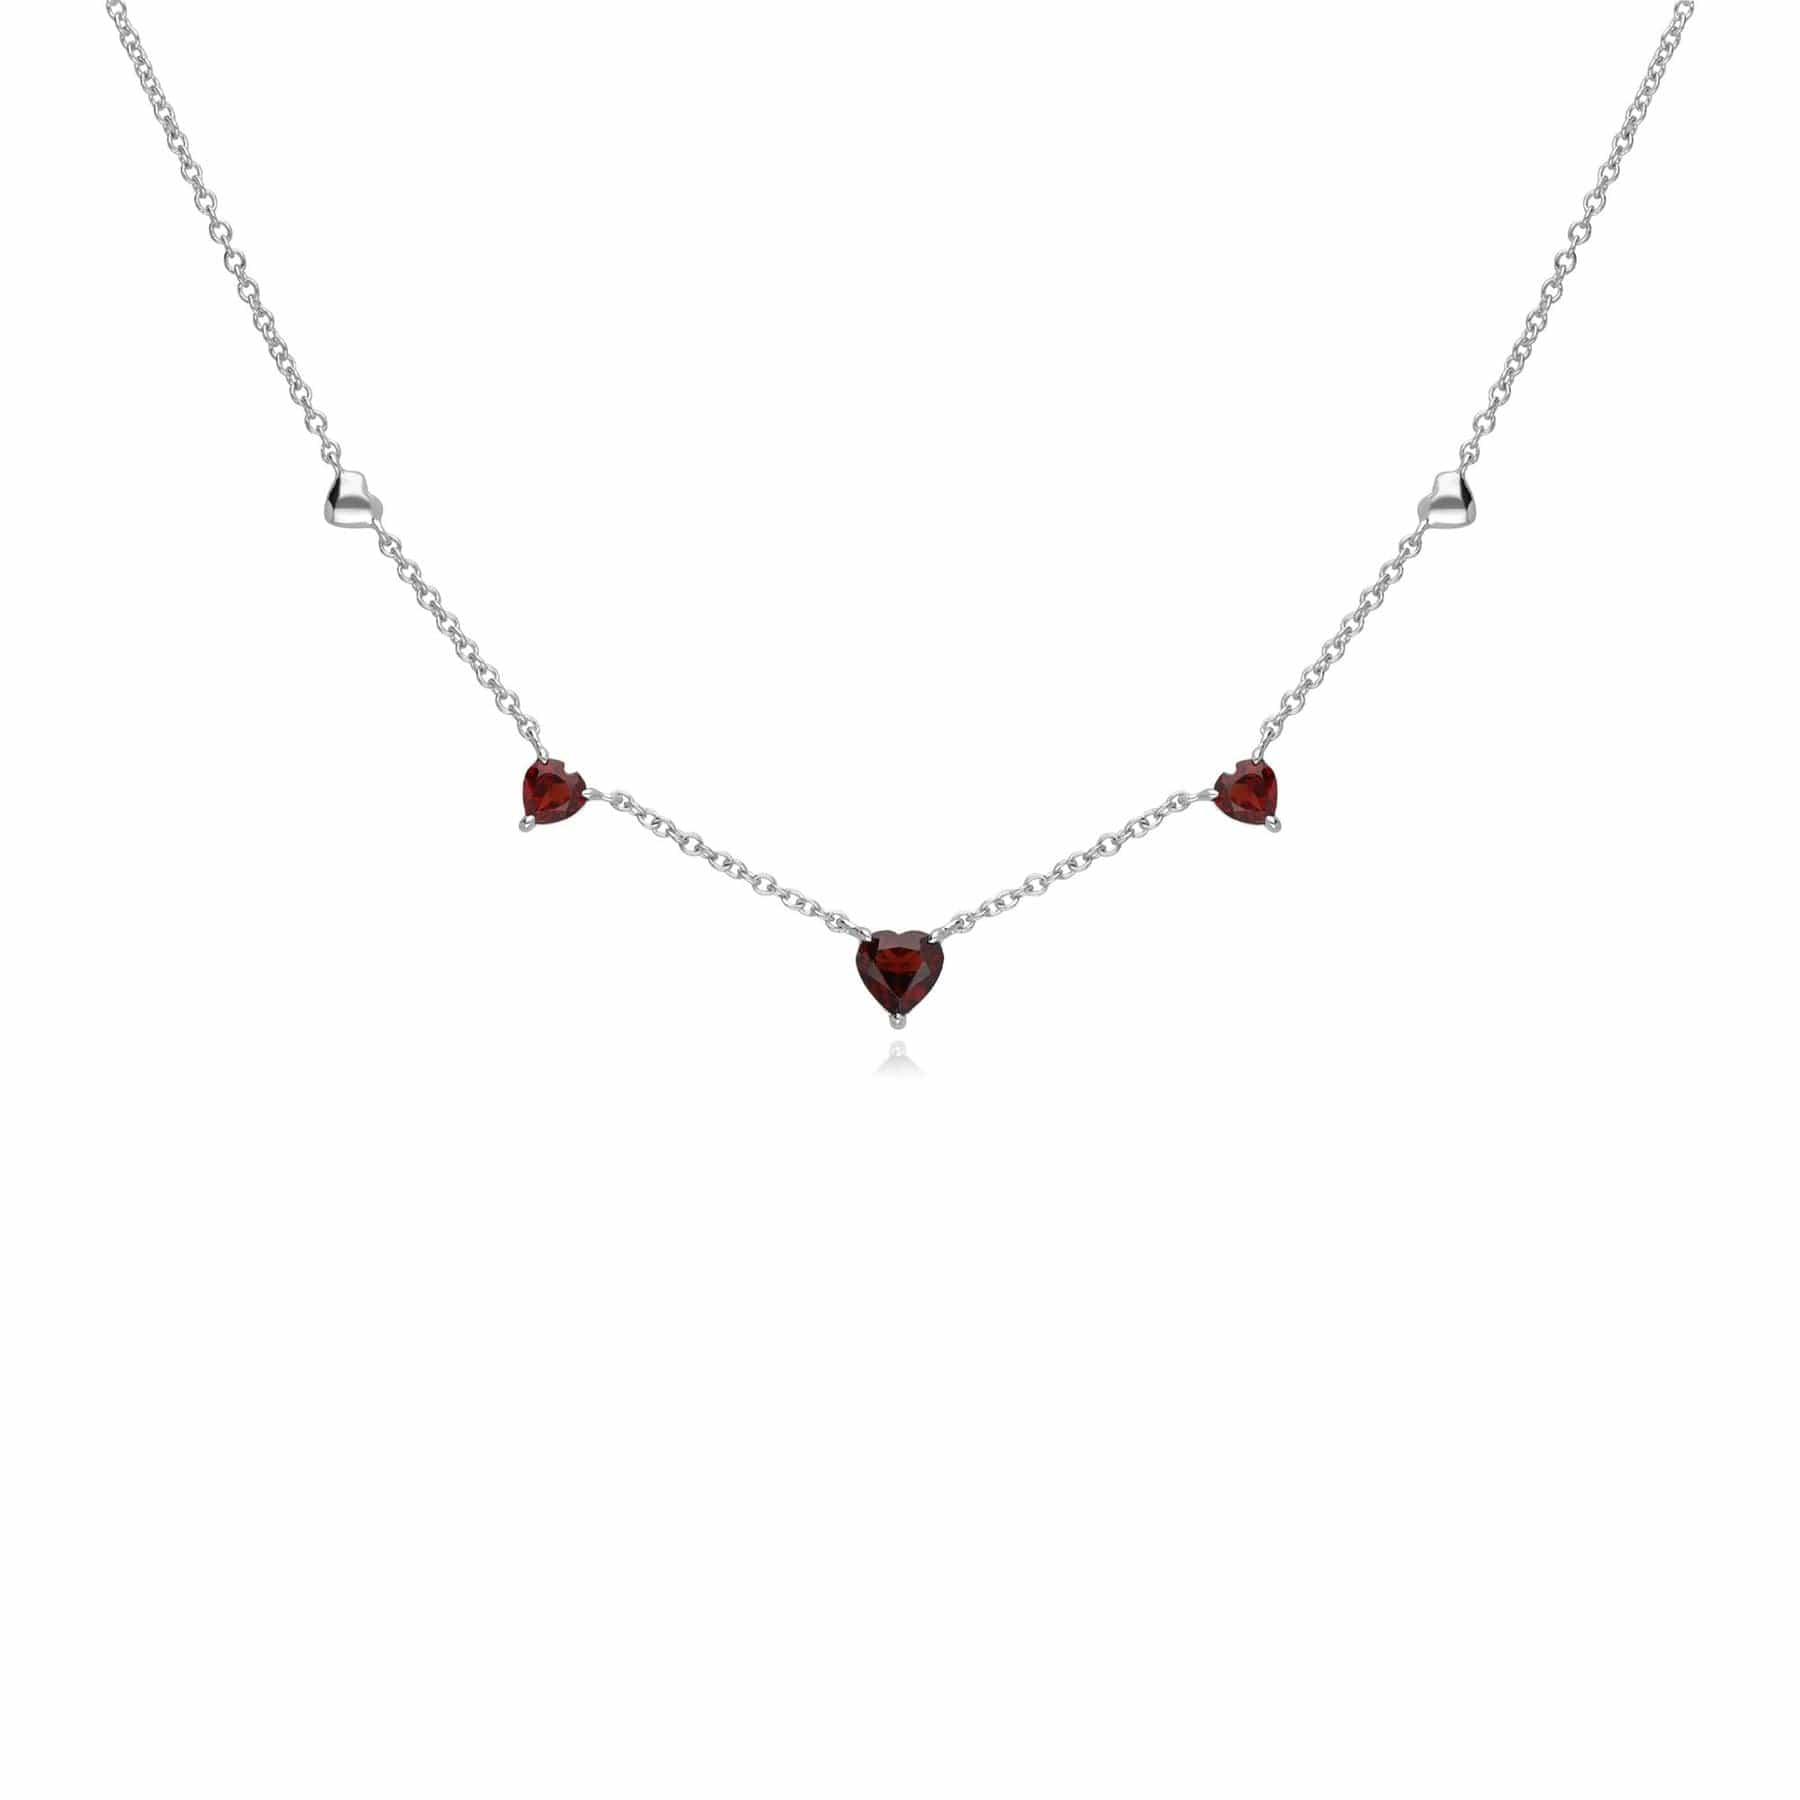 Gemondo Red Garnet Gemstone Love Heart Necklace in 9ct White Gold